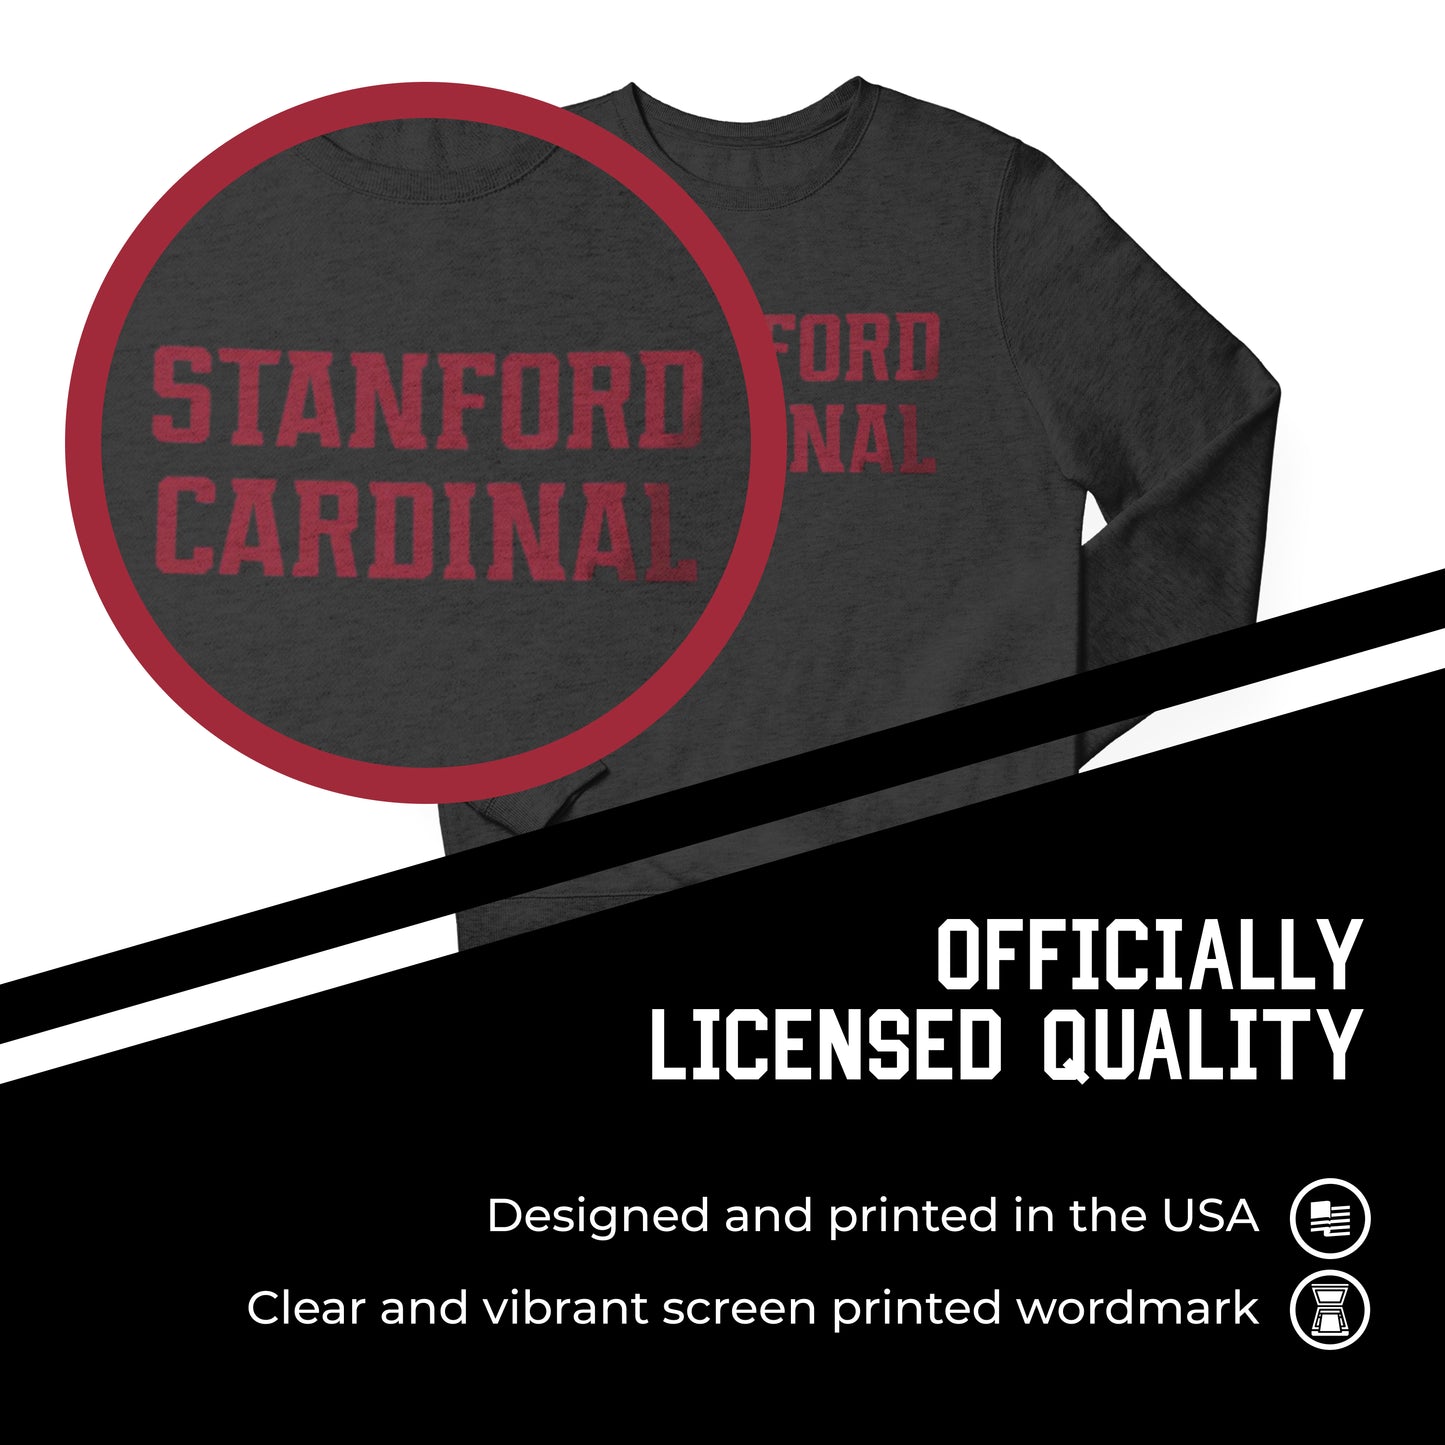 Stanford Cardinal NCAA Adult Charcoal Crewneck Fleece Sweatshirt - Charcoal